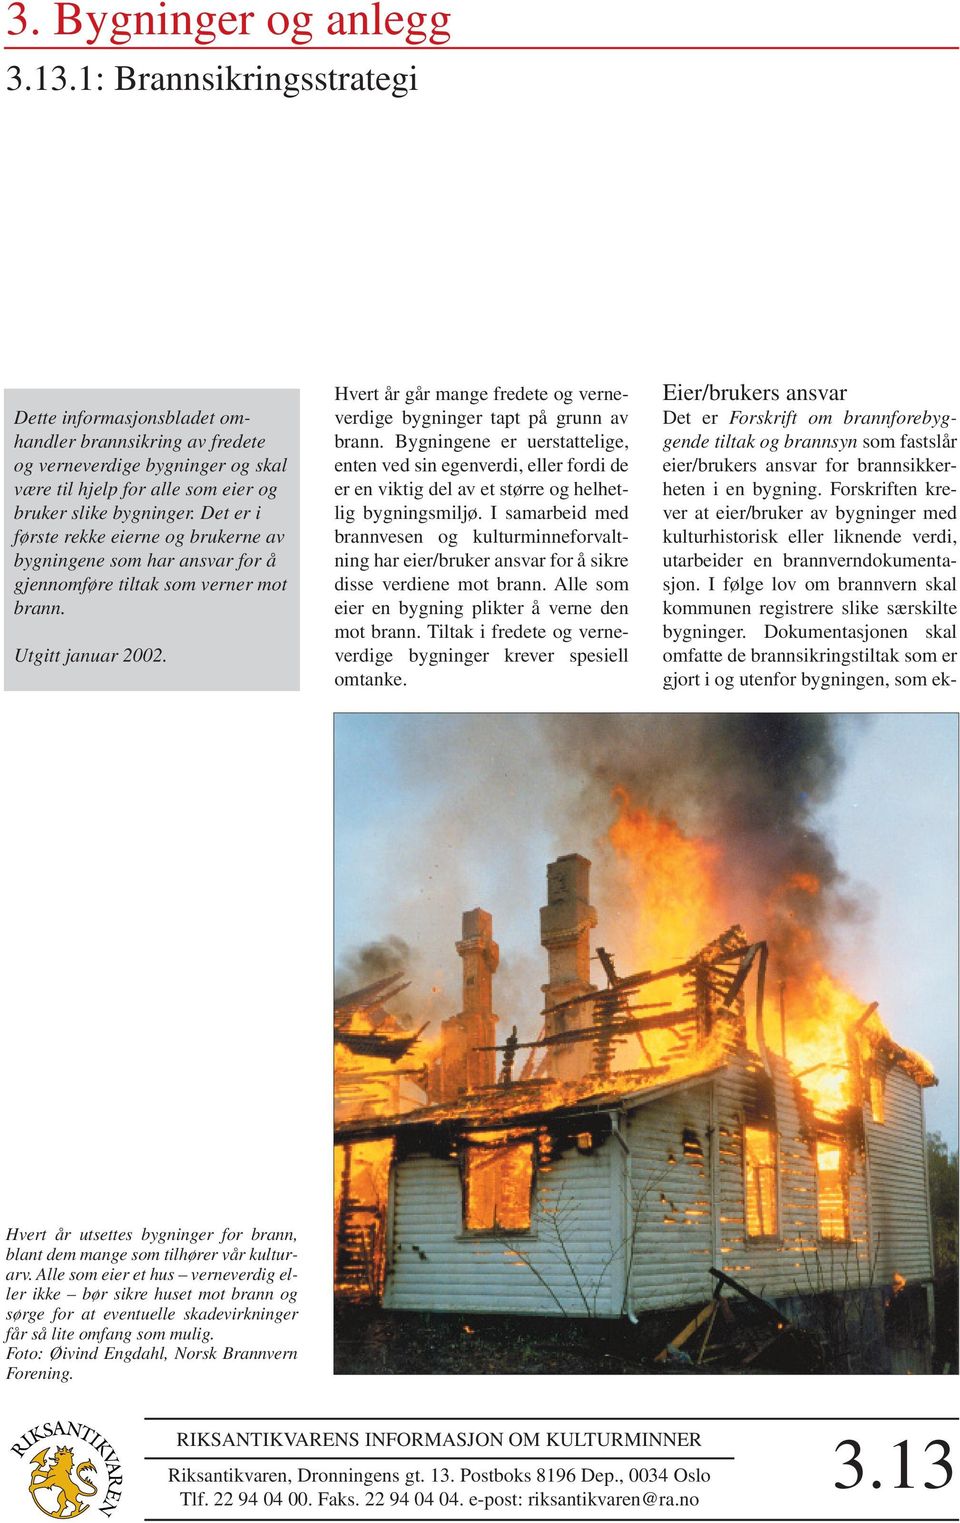 Det er i første rekke eierne og brukerne av bygningene som har ansvar for å gjennomføre tiltak som verner mot brann. Utgitt januar 2002.